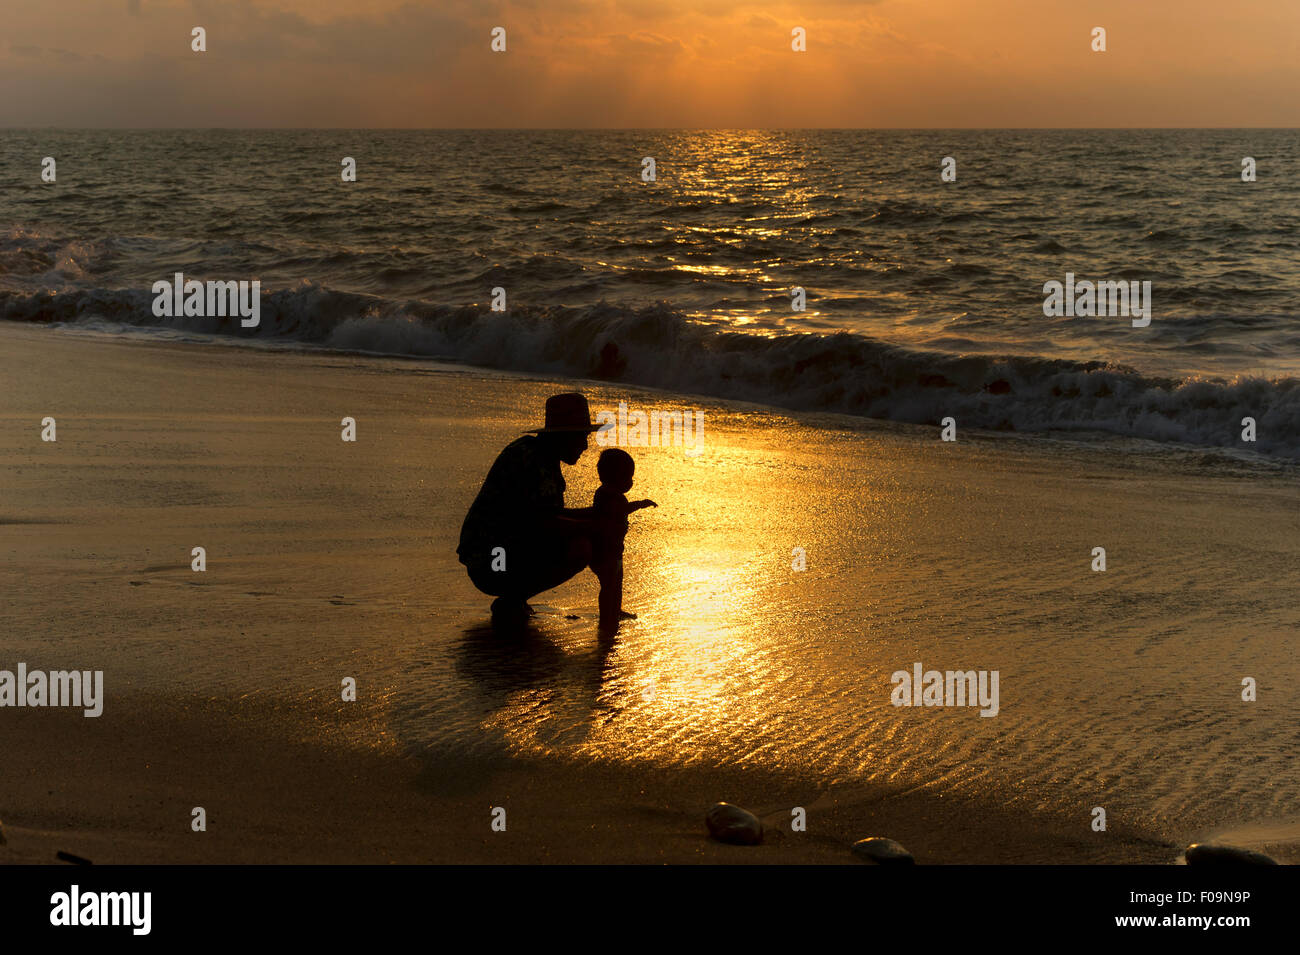 Vater-Baby-Silhouette ist ein liebevoll sein Kind zeigt das Meer zum ersten Mal Vater. Stockfoto